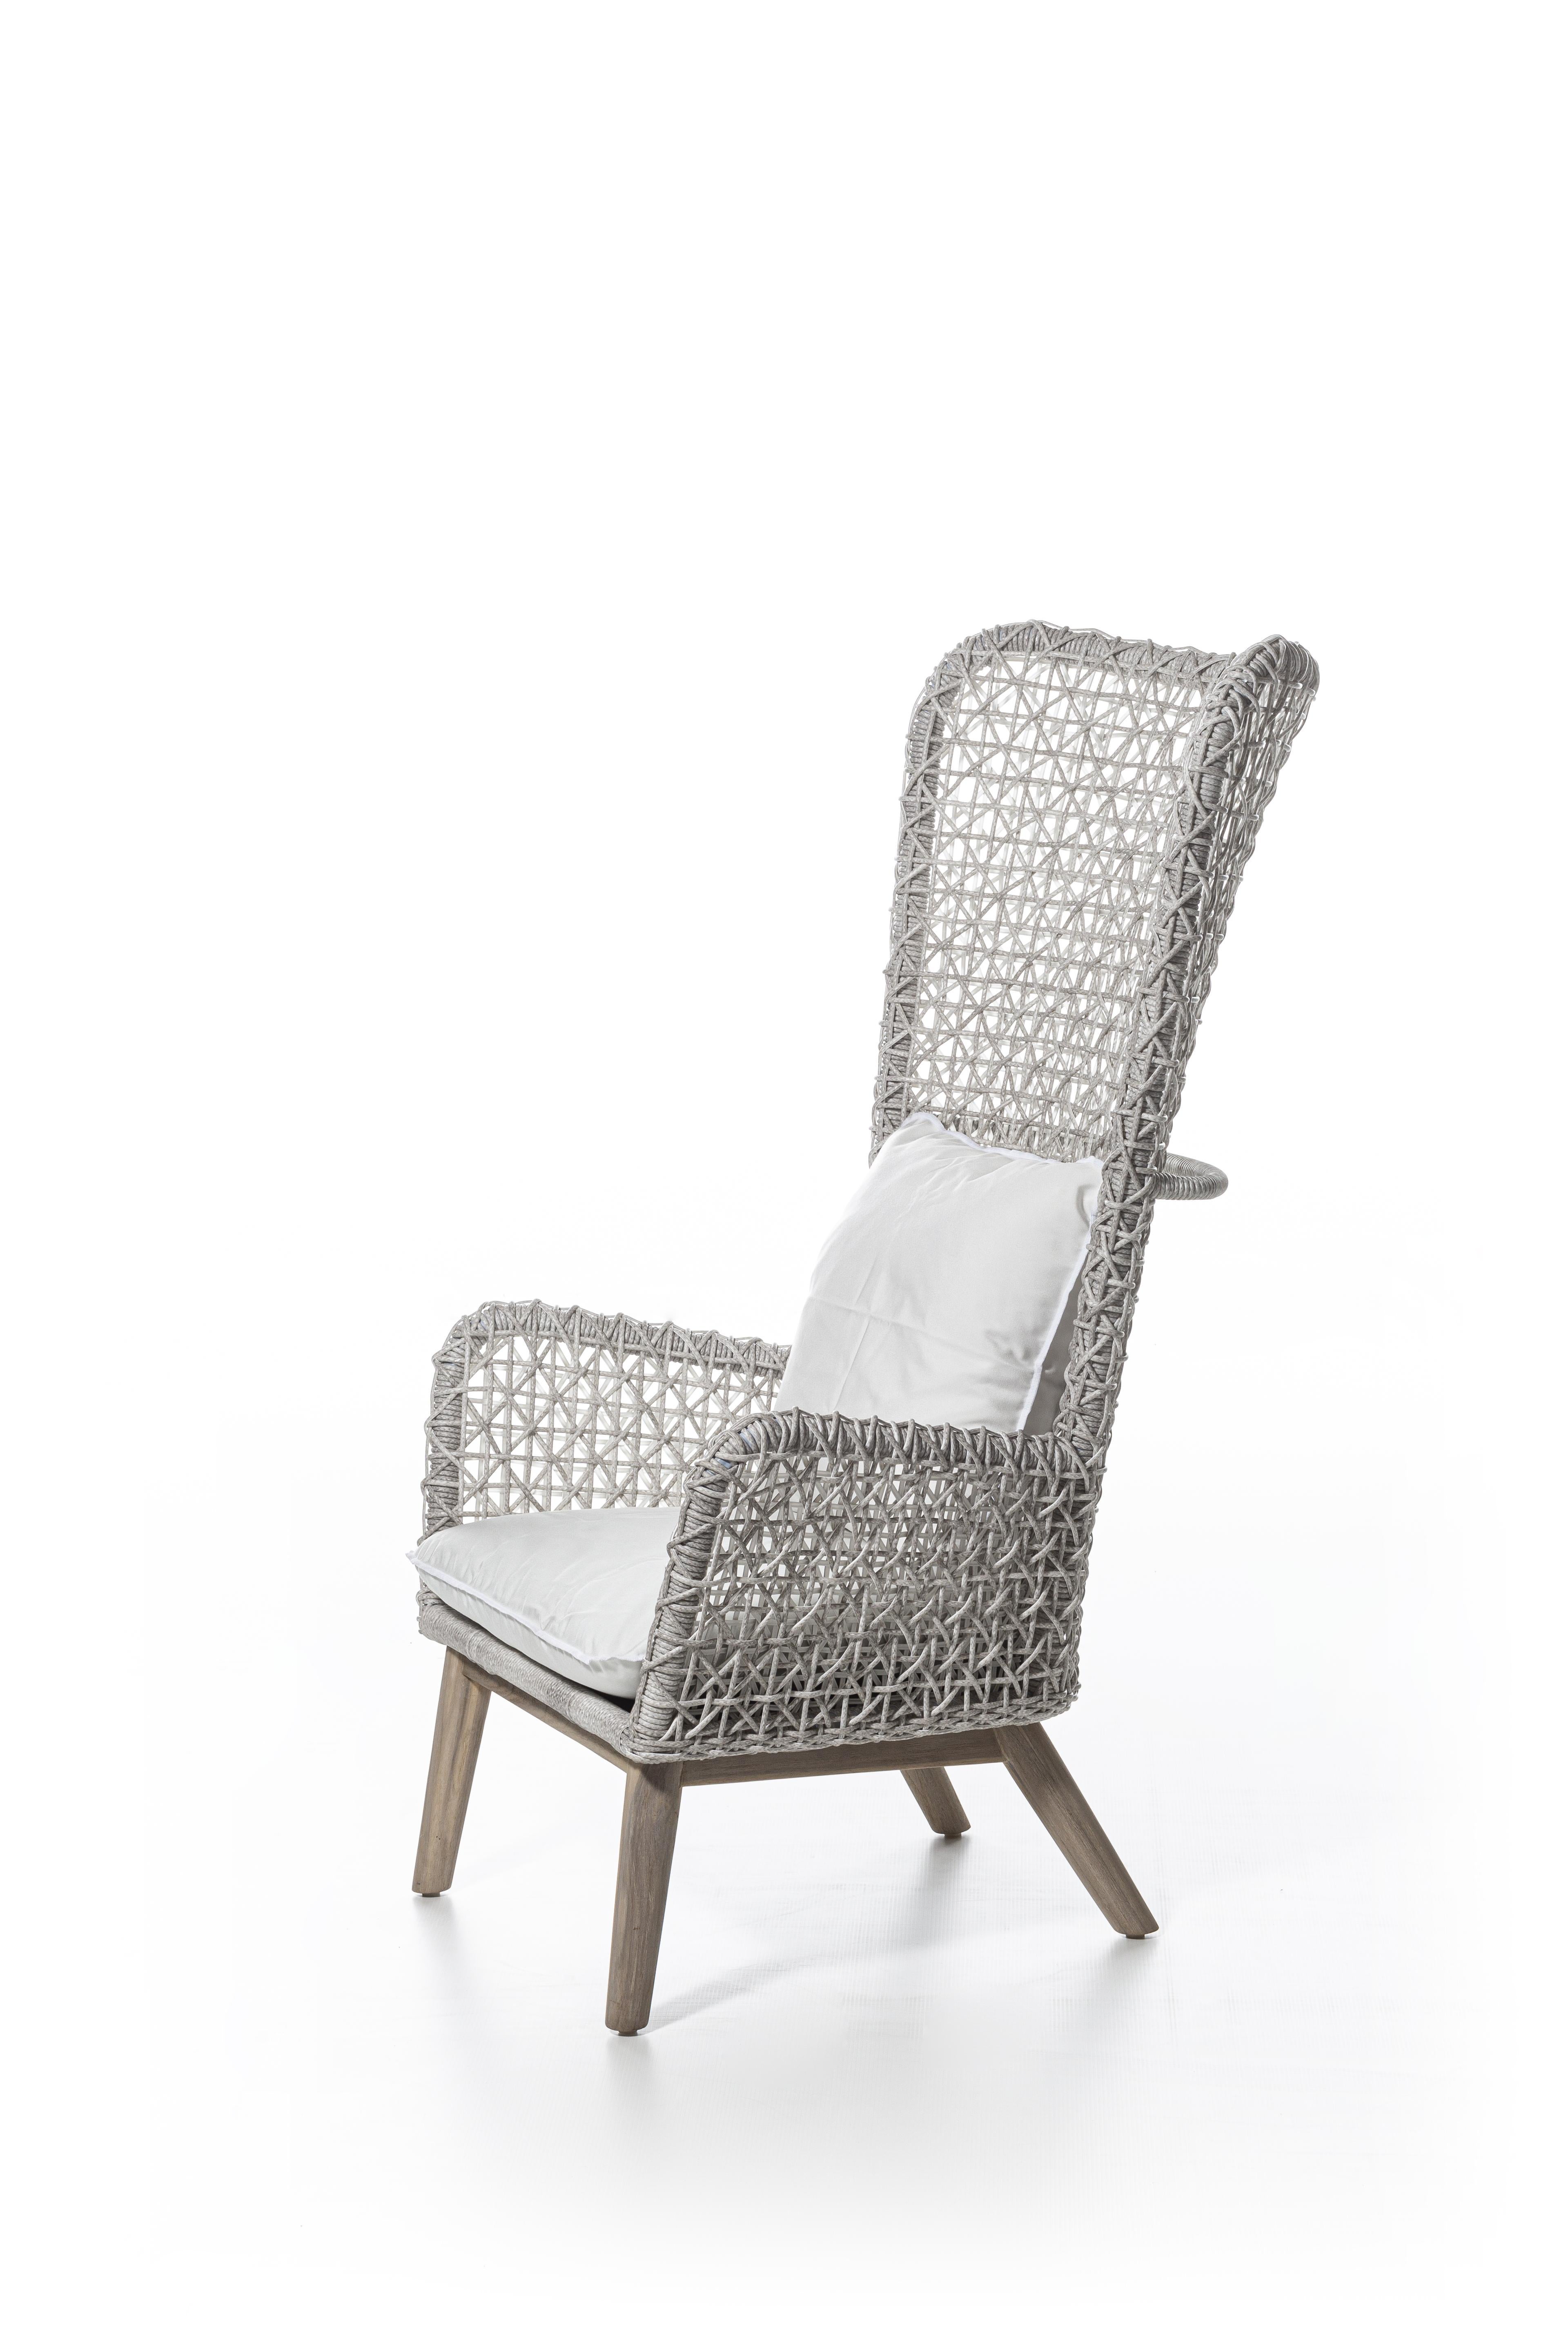 Modern Gervasoni Panda Bergere Armchair in Aspen 03 Upholstery & White/Gray Resin Fiber For Sale